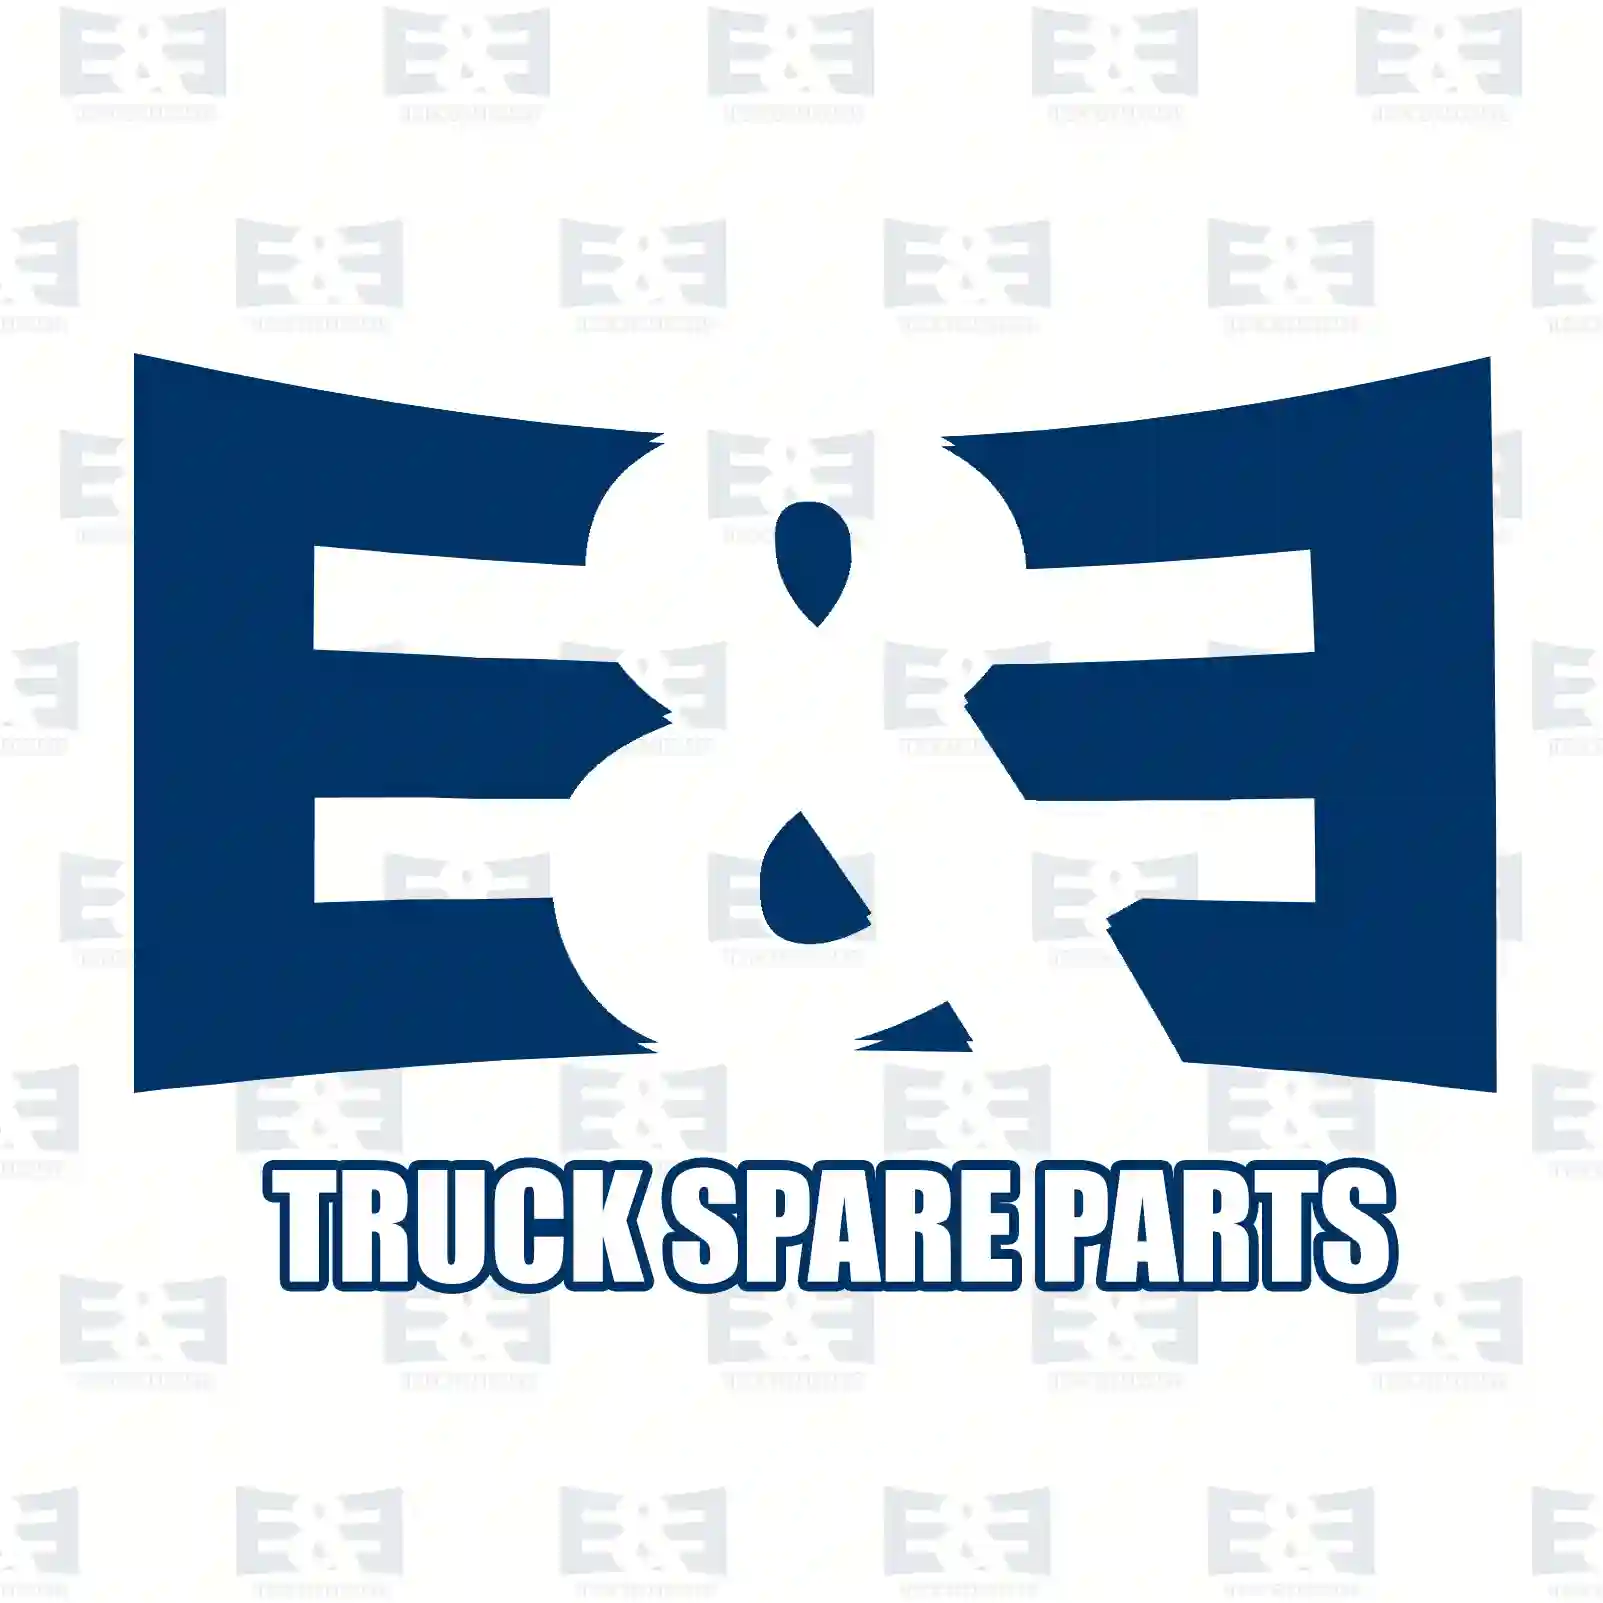 Brake disc, 2E2293991, 02992636, 02996710, 07184078, 07184082, 07187539, 07187714, 07189863, 2992636, 2996710, 7184078, 7187539, 7187714, 7189863, ZG50227-0008 ||  2E2293991 E&E Truck Spare Parts | Truck Spare Parts, Auotomotive Spare Parts Brake disc, 2E2293991, 02992636, 02996710, 07184078, 07184082, 07187539, 07187714, 07189863, 2992636, 2996710, 7184078, 7187539, 7187714, 7189863, ZG50227-0008 ||  2E2293991 E&E Truck Spare Parts | Truck Spare Parts, Auotomotive Spare Parts